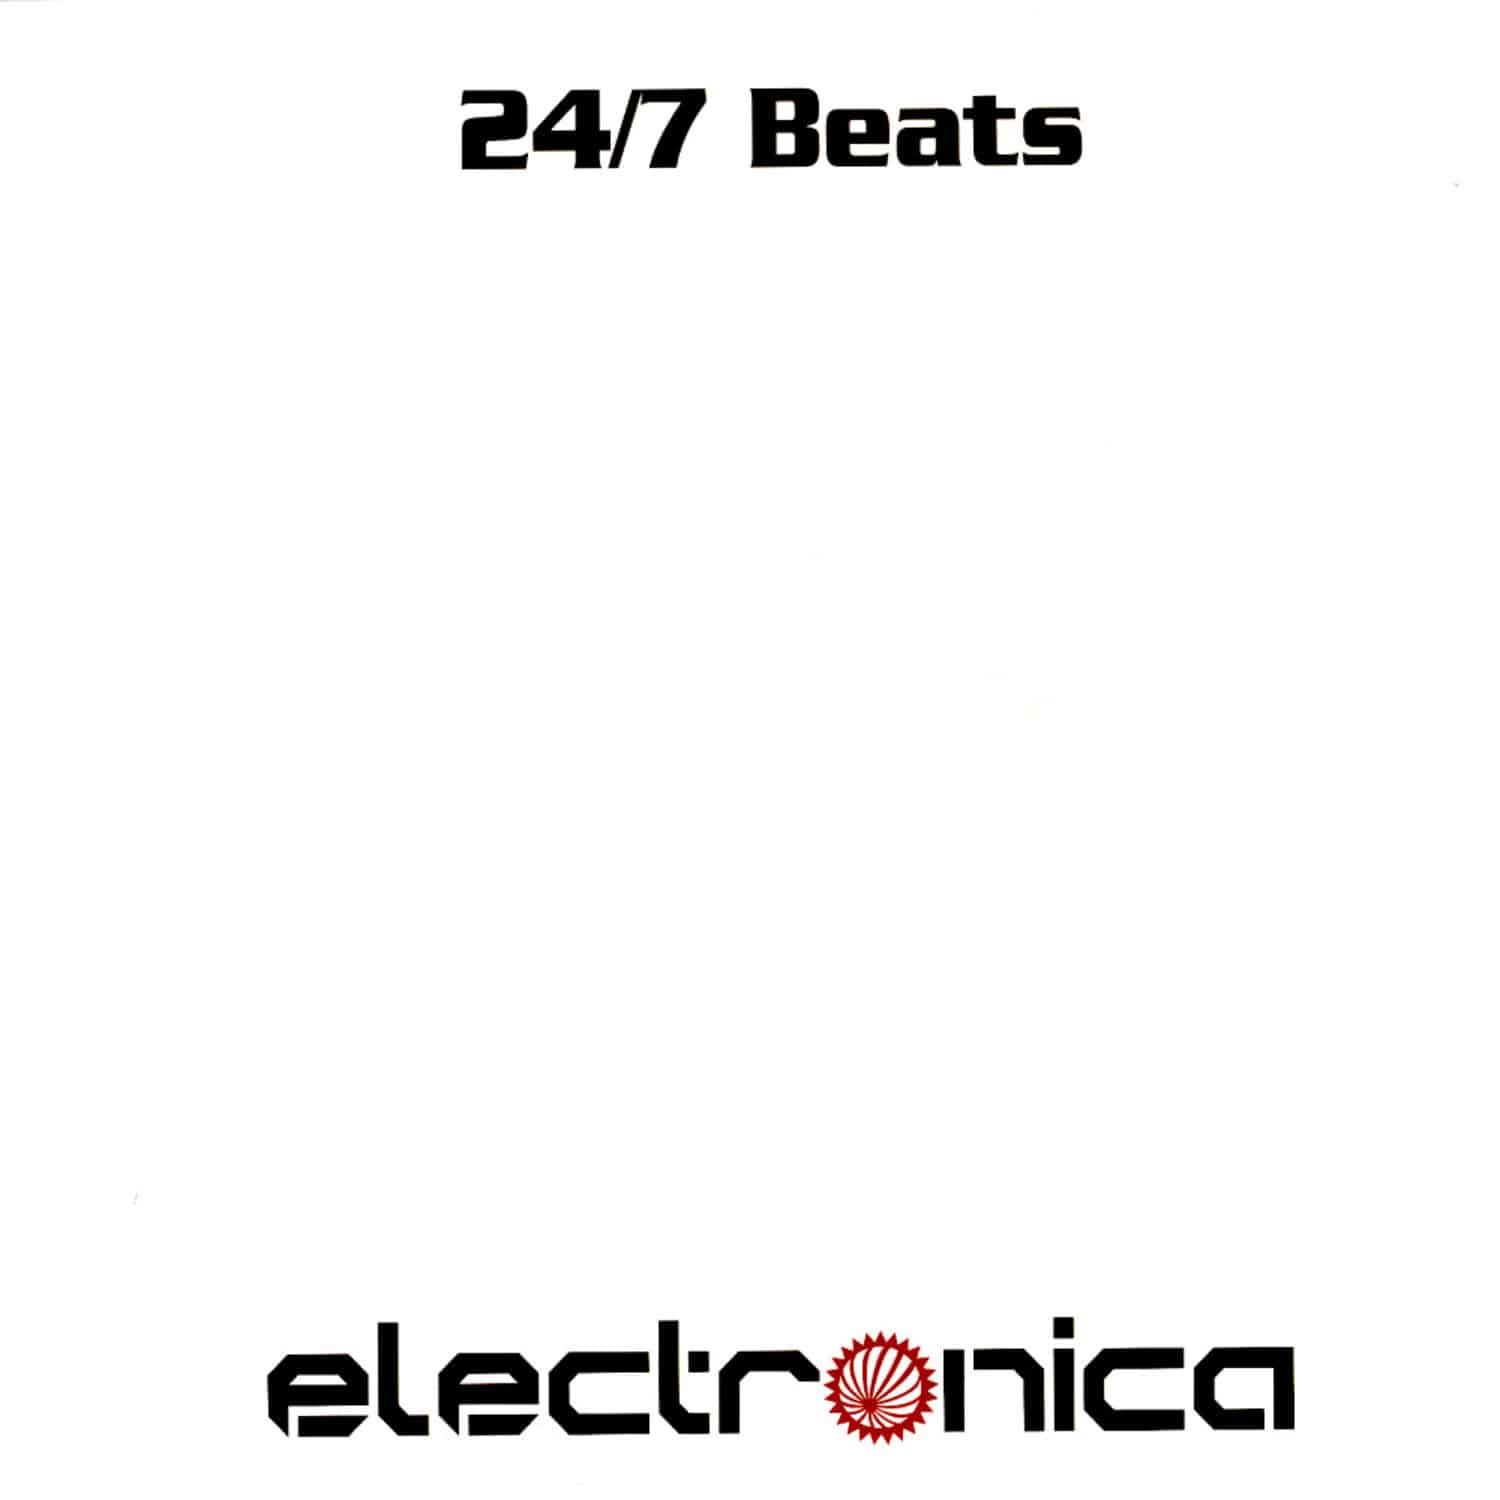 24/7 Beats - TWIN PEAKS